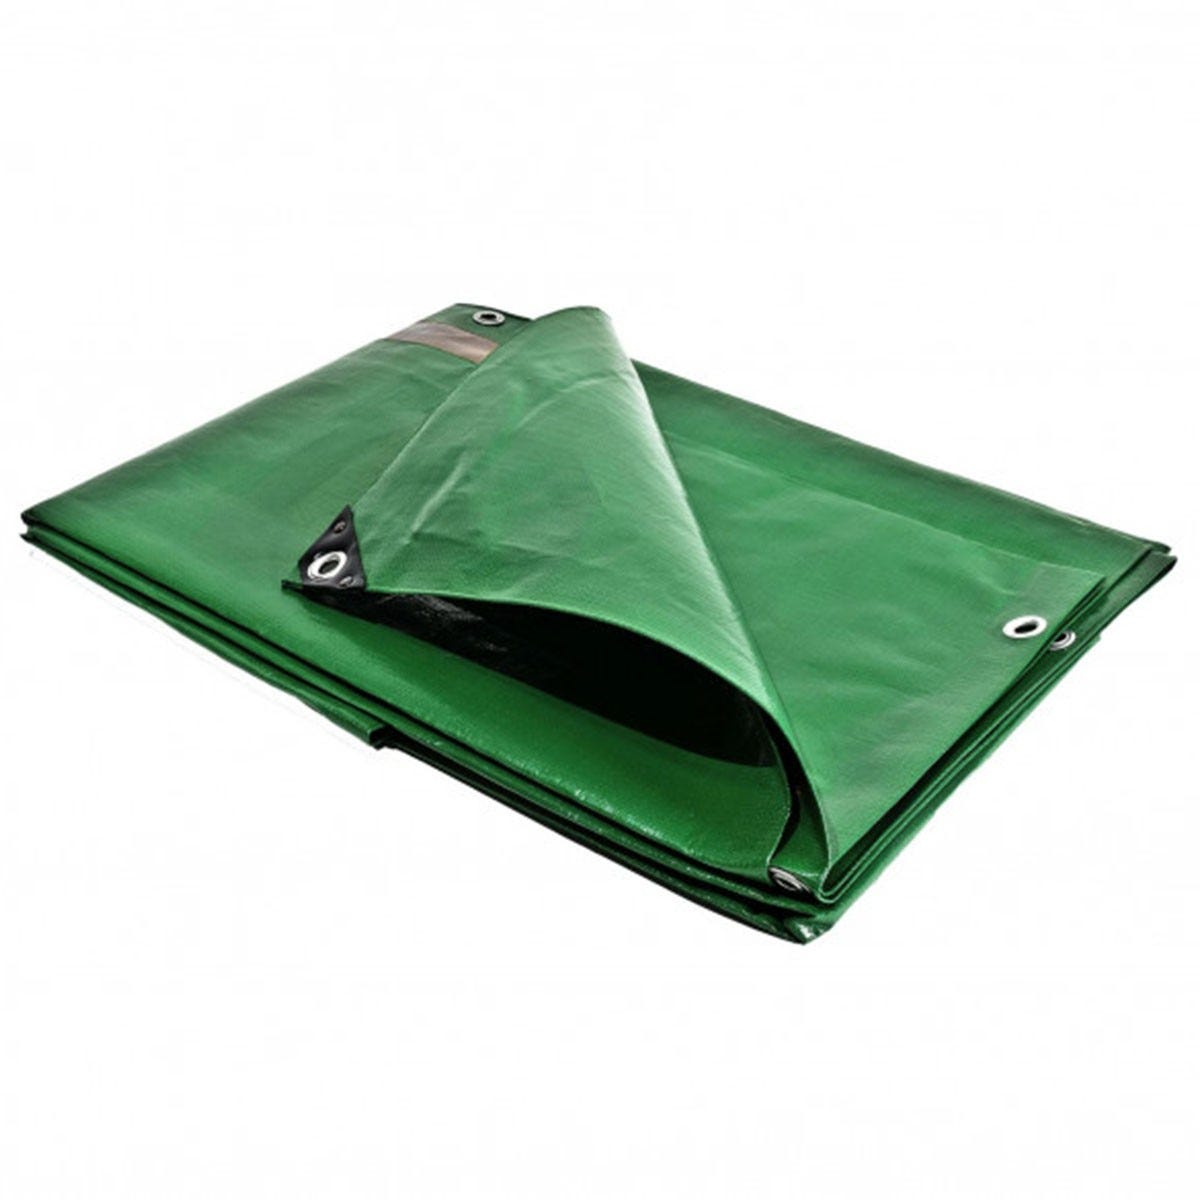 Bâche plastique 6 x 10 m étanche traitée anti UV verte et marron 250g/m² - bâche de protection polyéthylène haute qualité 2